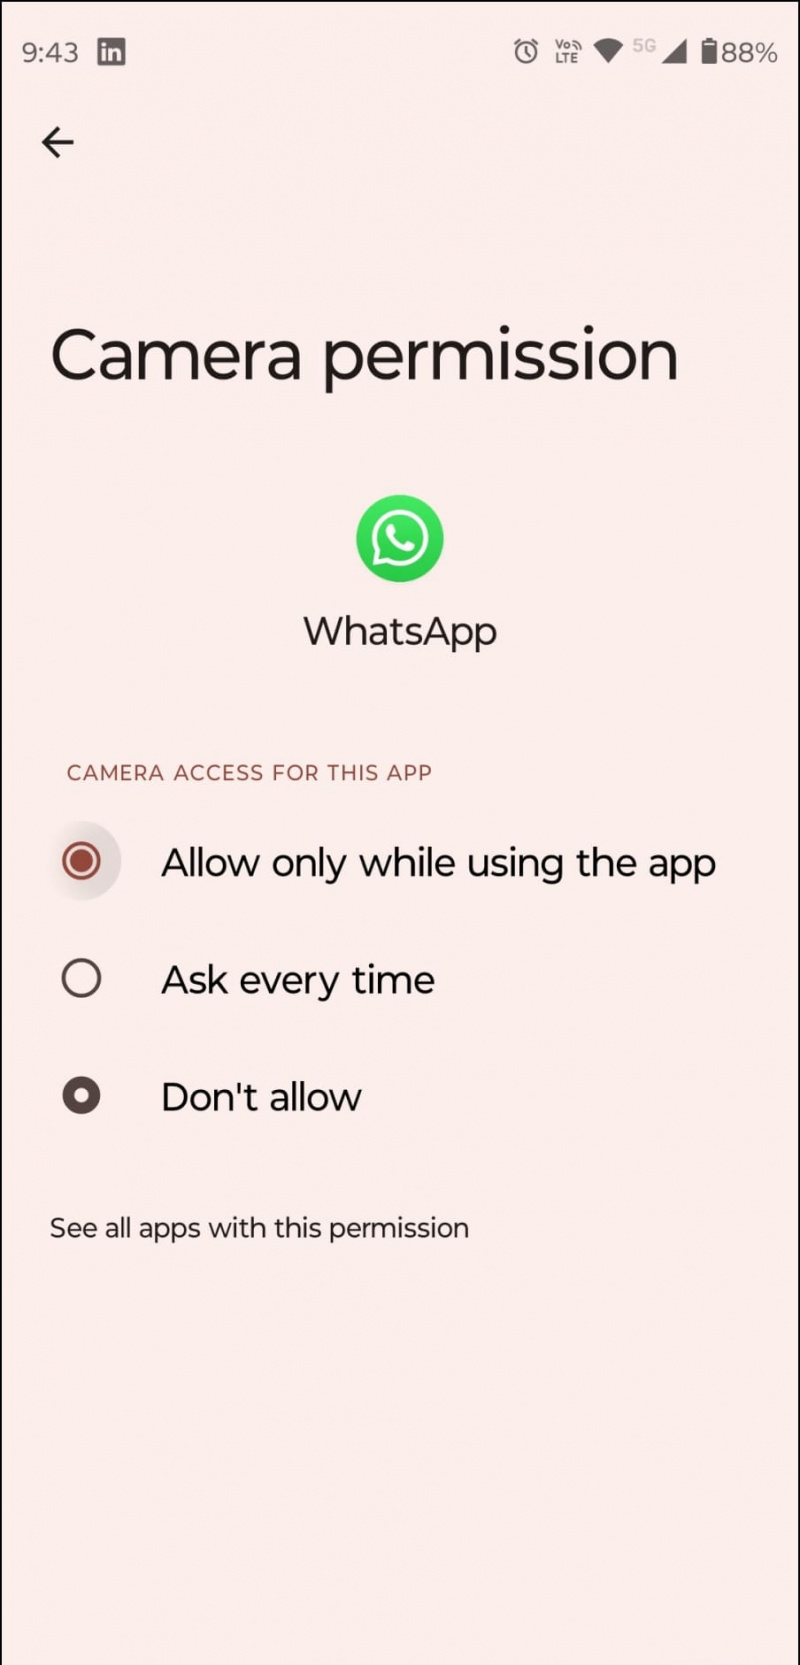   రెండు పరికరాల లాగిన్ కోసం WhatsApp కెమెరా యాక్సెస్‌ను అనుమతించండి